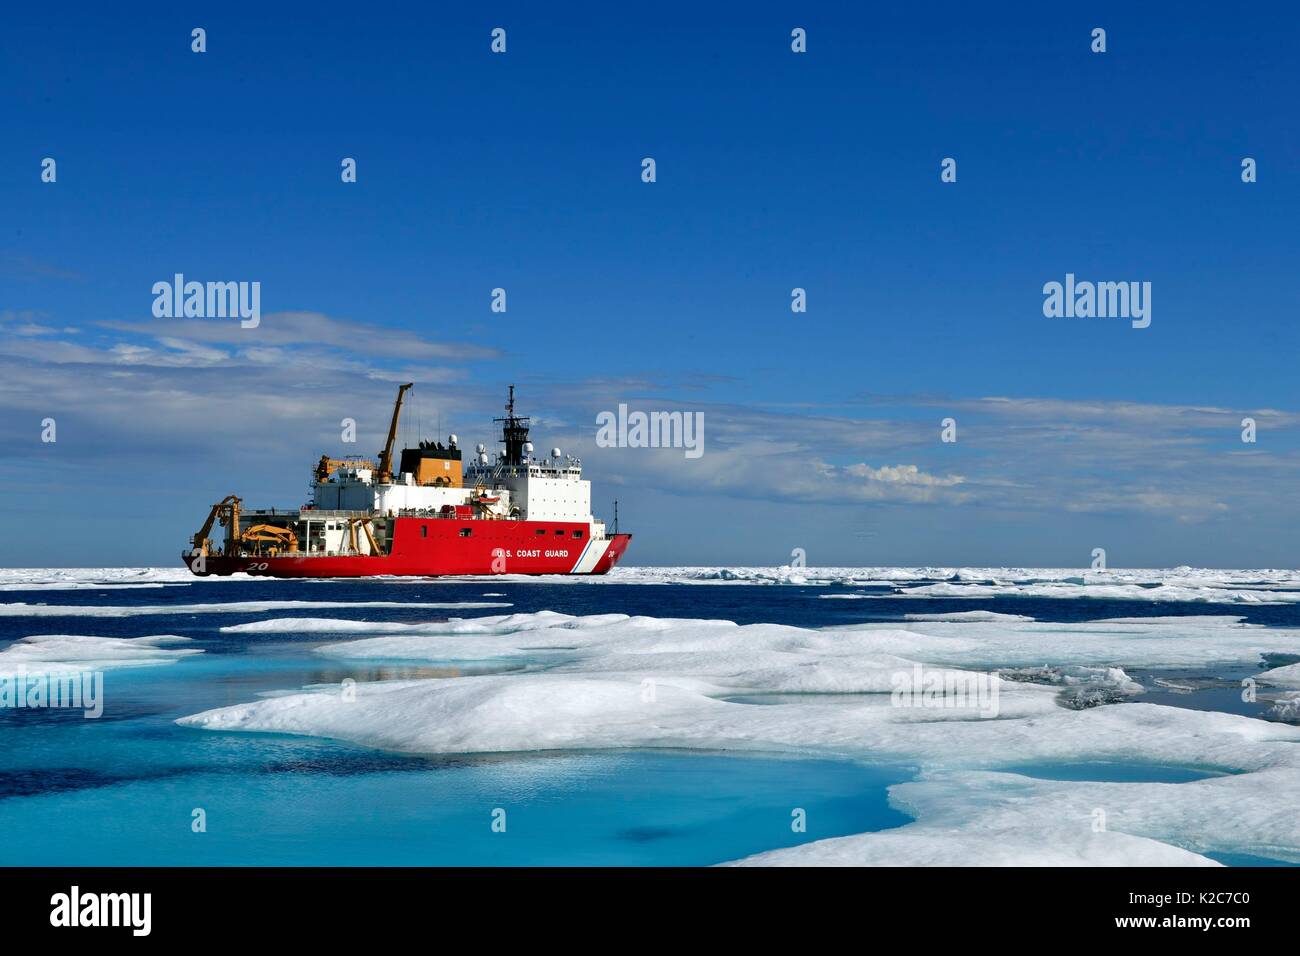 La Garde côtière des États-Unis de classe polaire coupe-brise-glace moyen USCGC Healy se trouve dans les eaux glacées de la mer de Chukchi pendant l'opération Bouclier arctique recherche scientifique 29 juillet 2017 Déploiement, près de Point Barrow, en Alaska. Banque D'Images